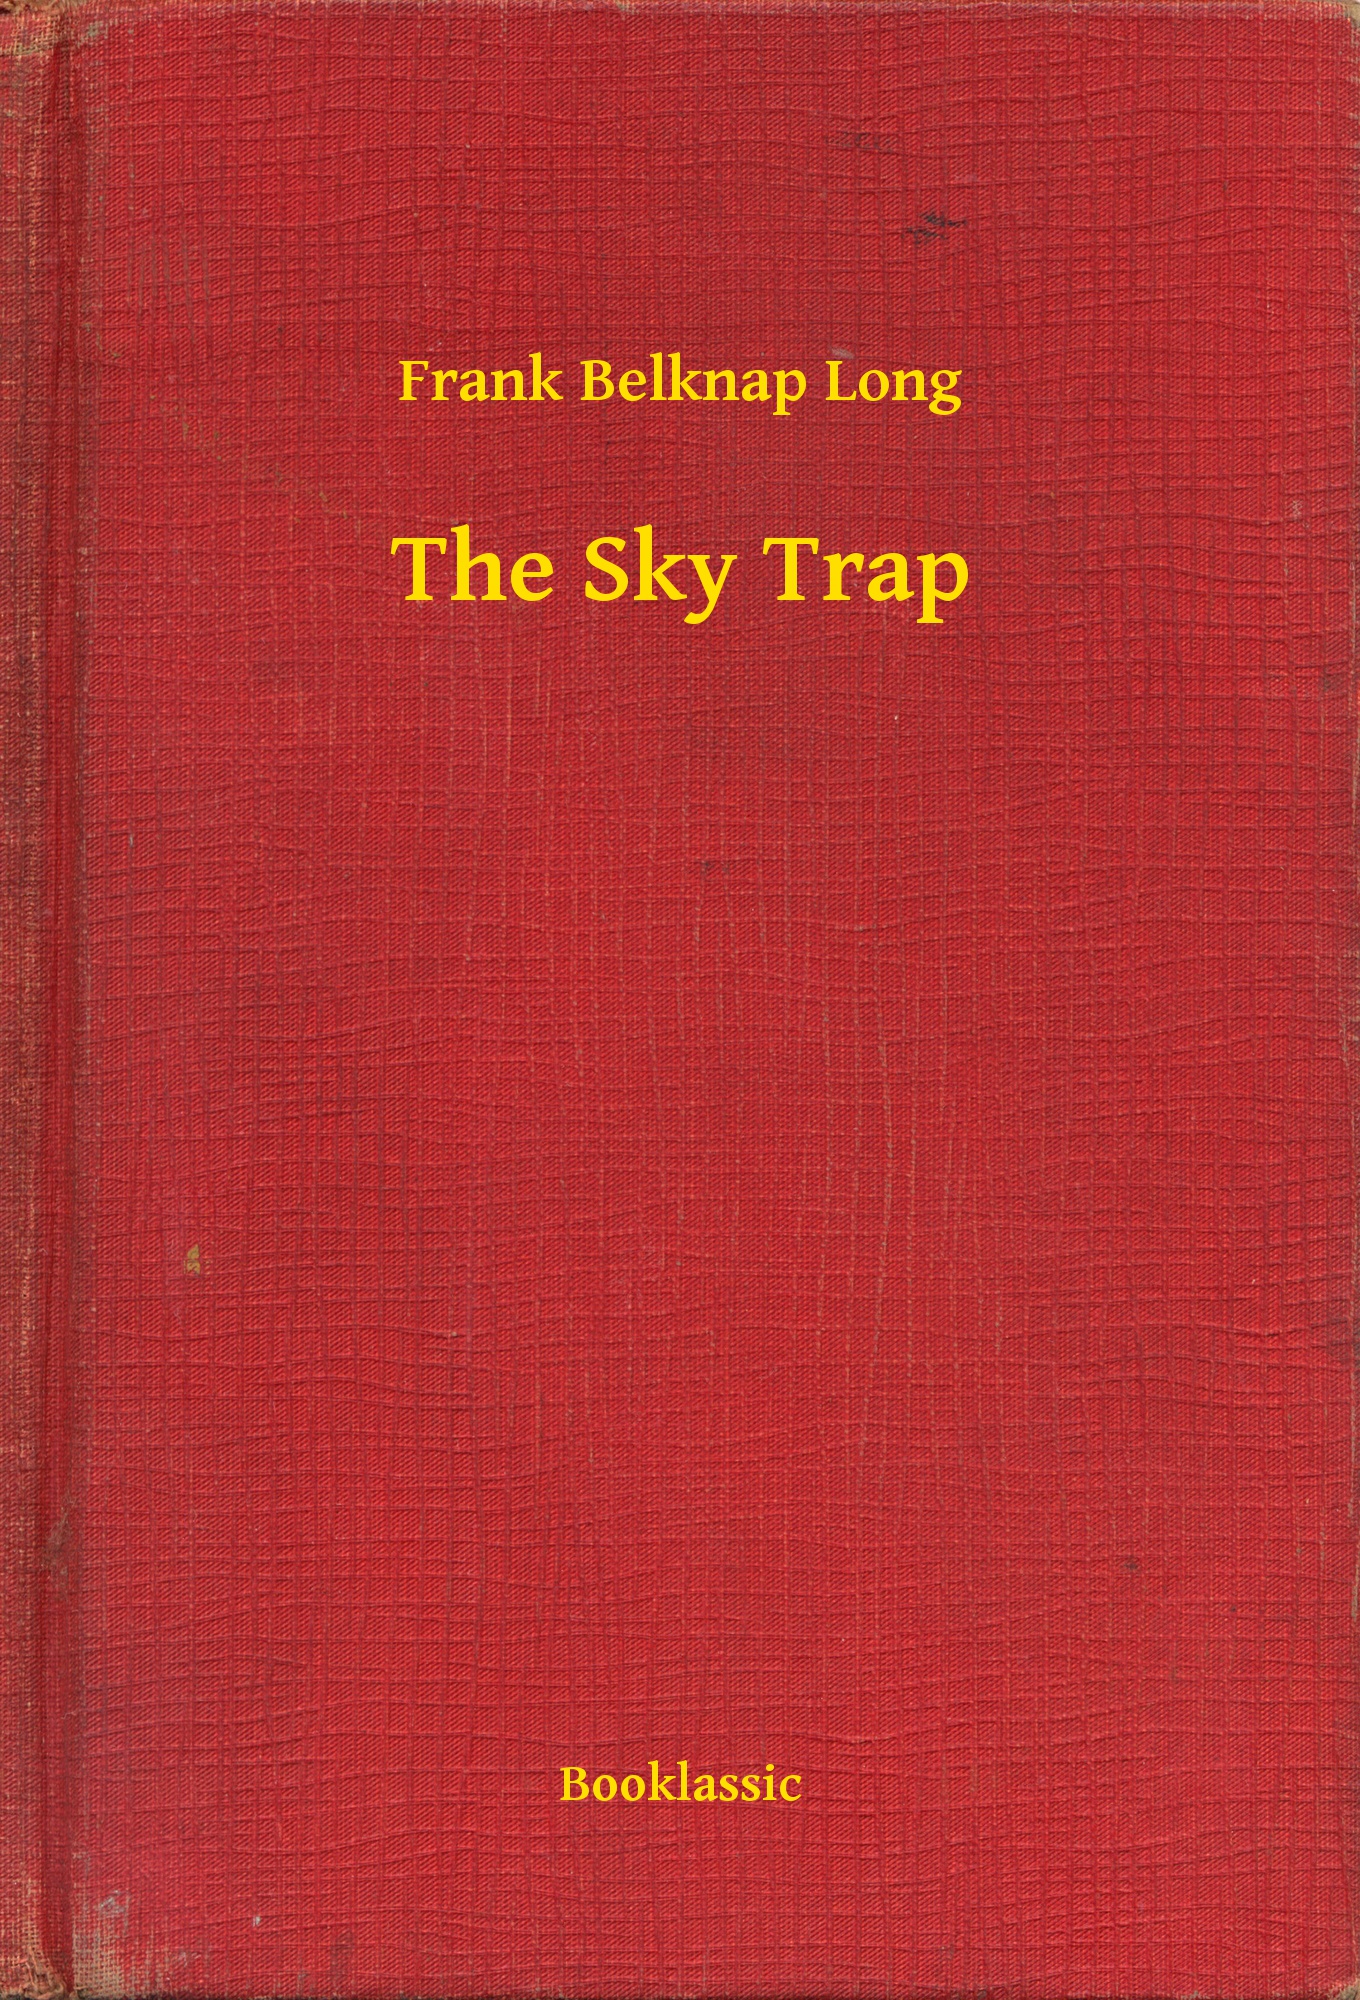 The Sky Trap